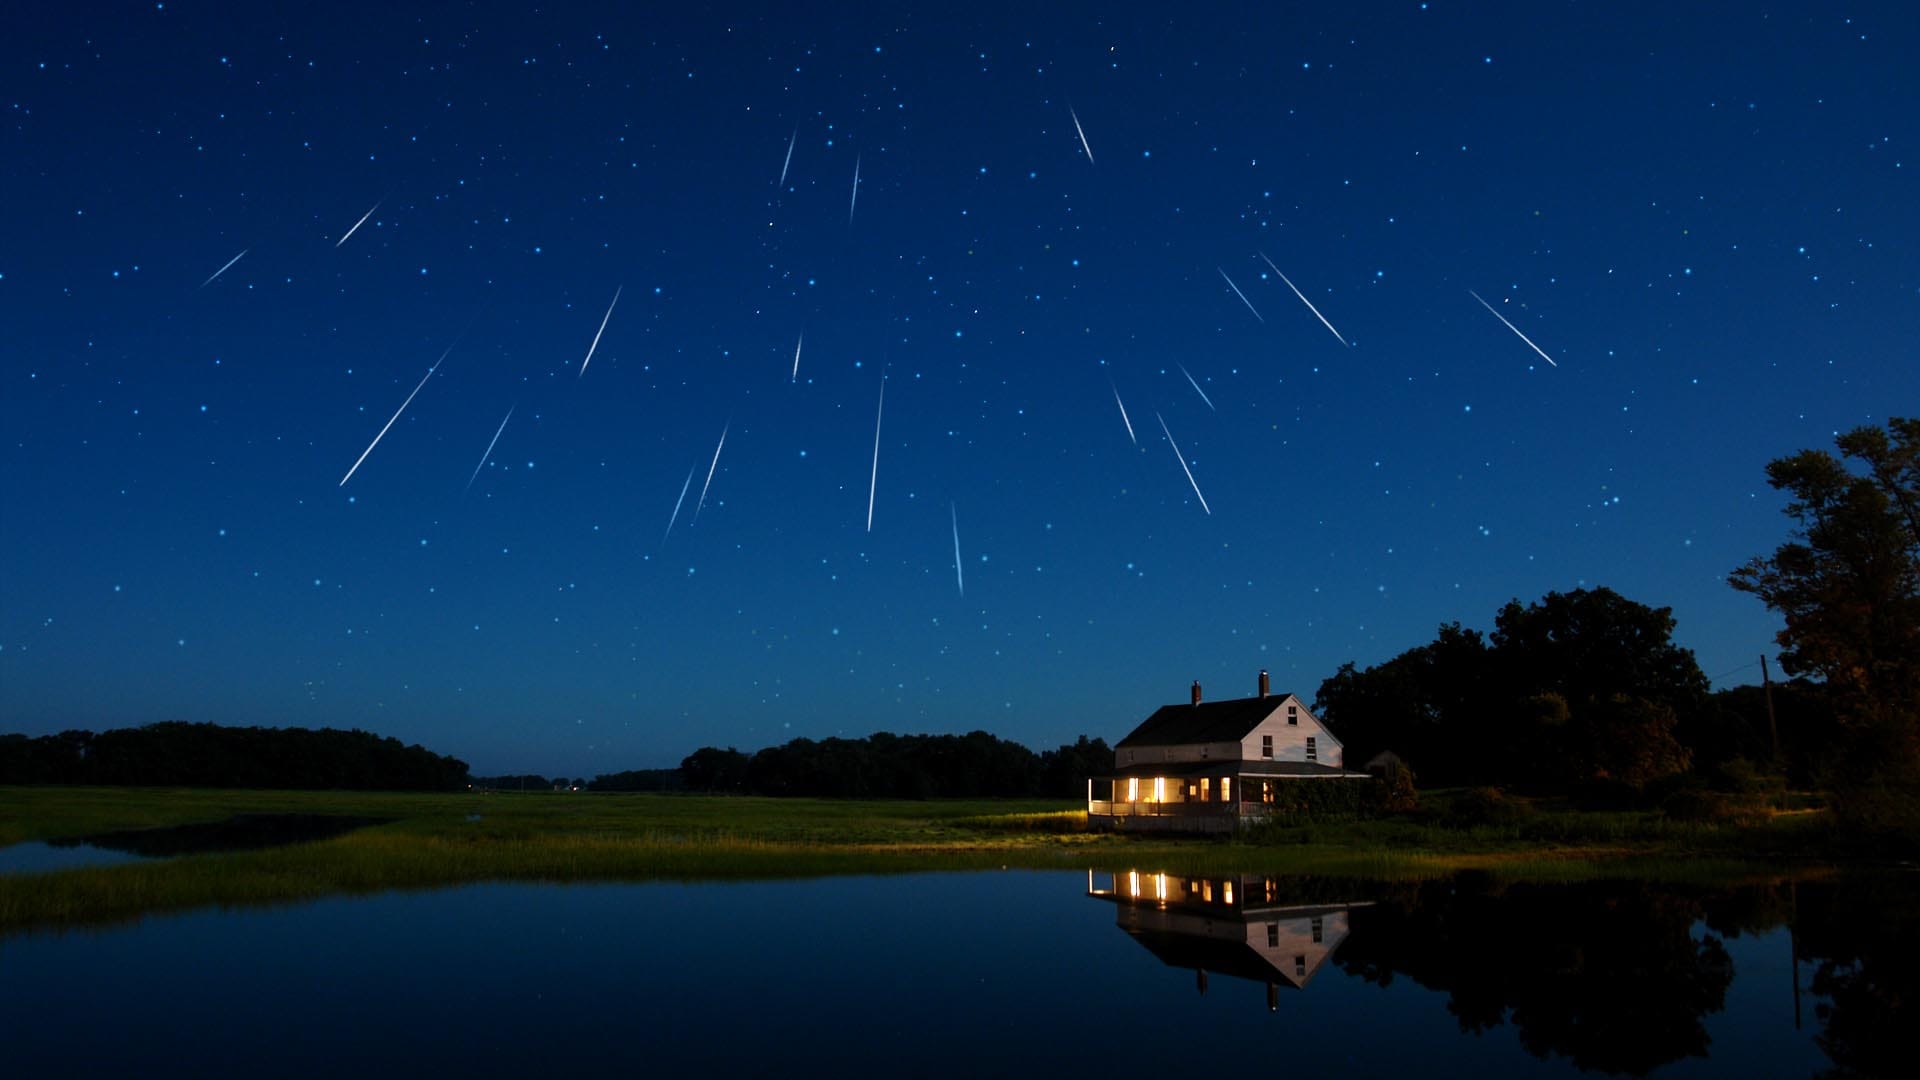 Lluvia de estrellas Perseidas: Ve los meteoros en el cielo